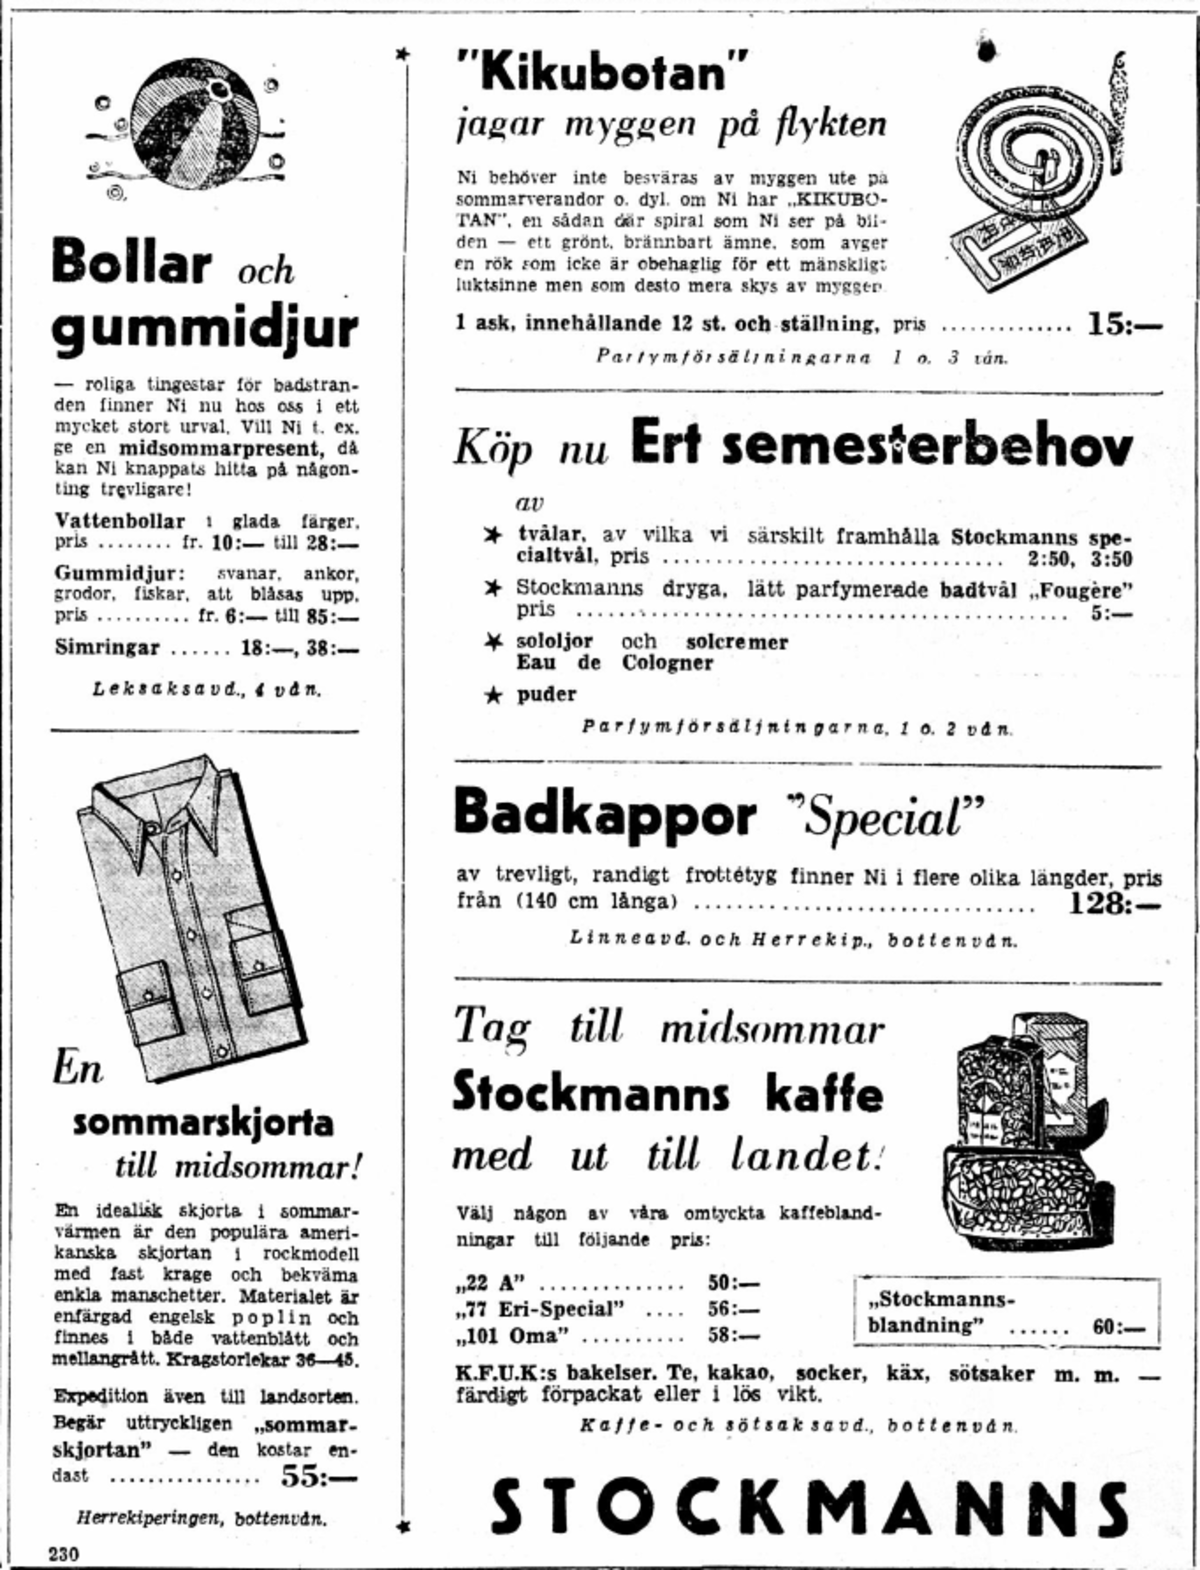 Stockmanns varuhus annons erbjuder bollar och gummidjur, badkappor, sommarskjortor, kaffe och "Kikubotan" mot myggor